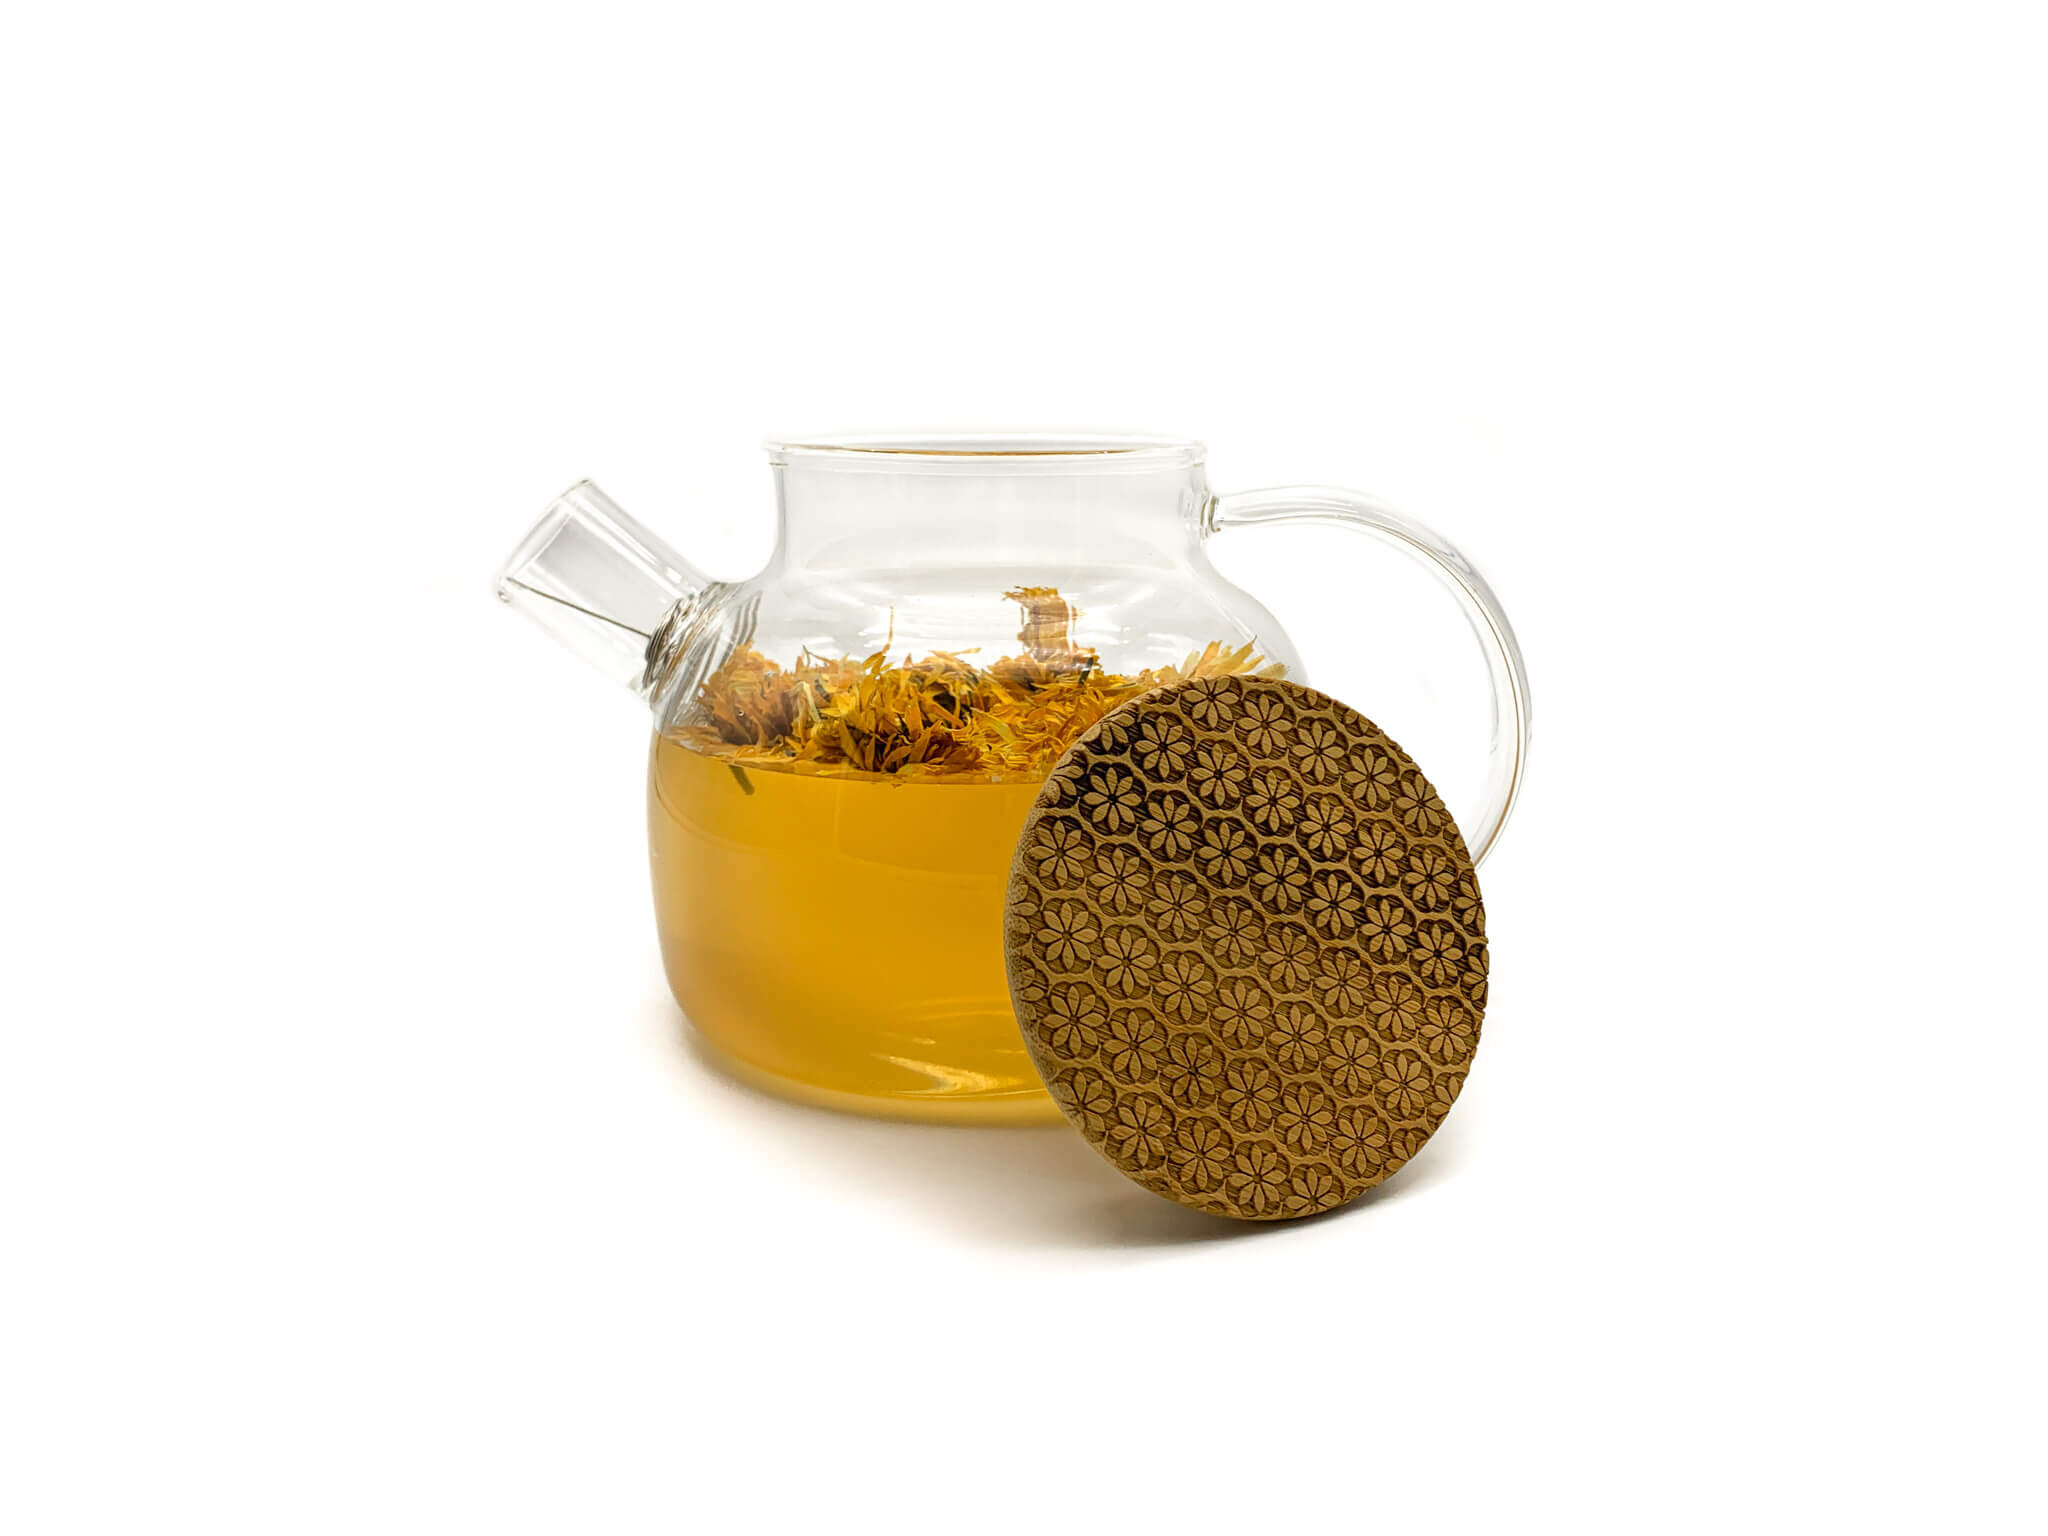 Lian Glass Teapot